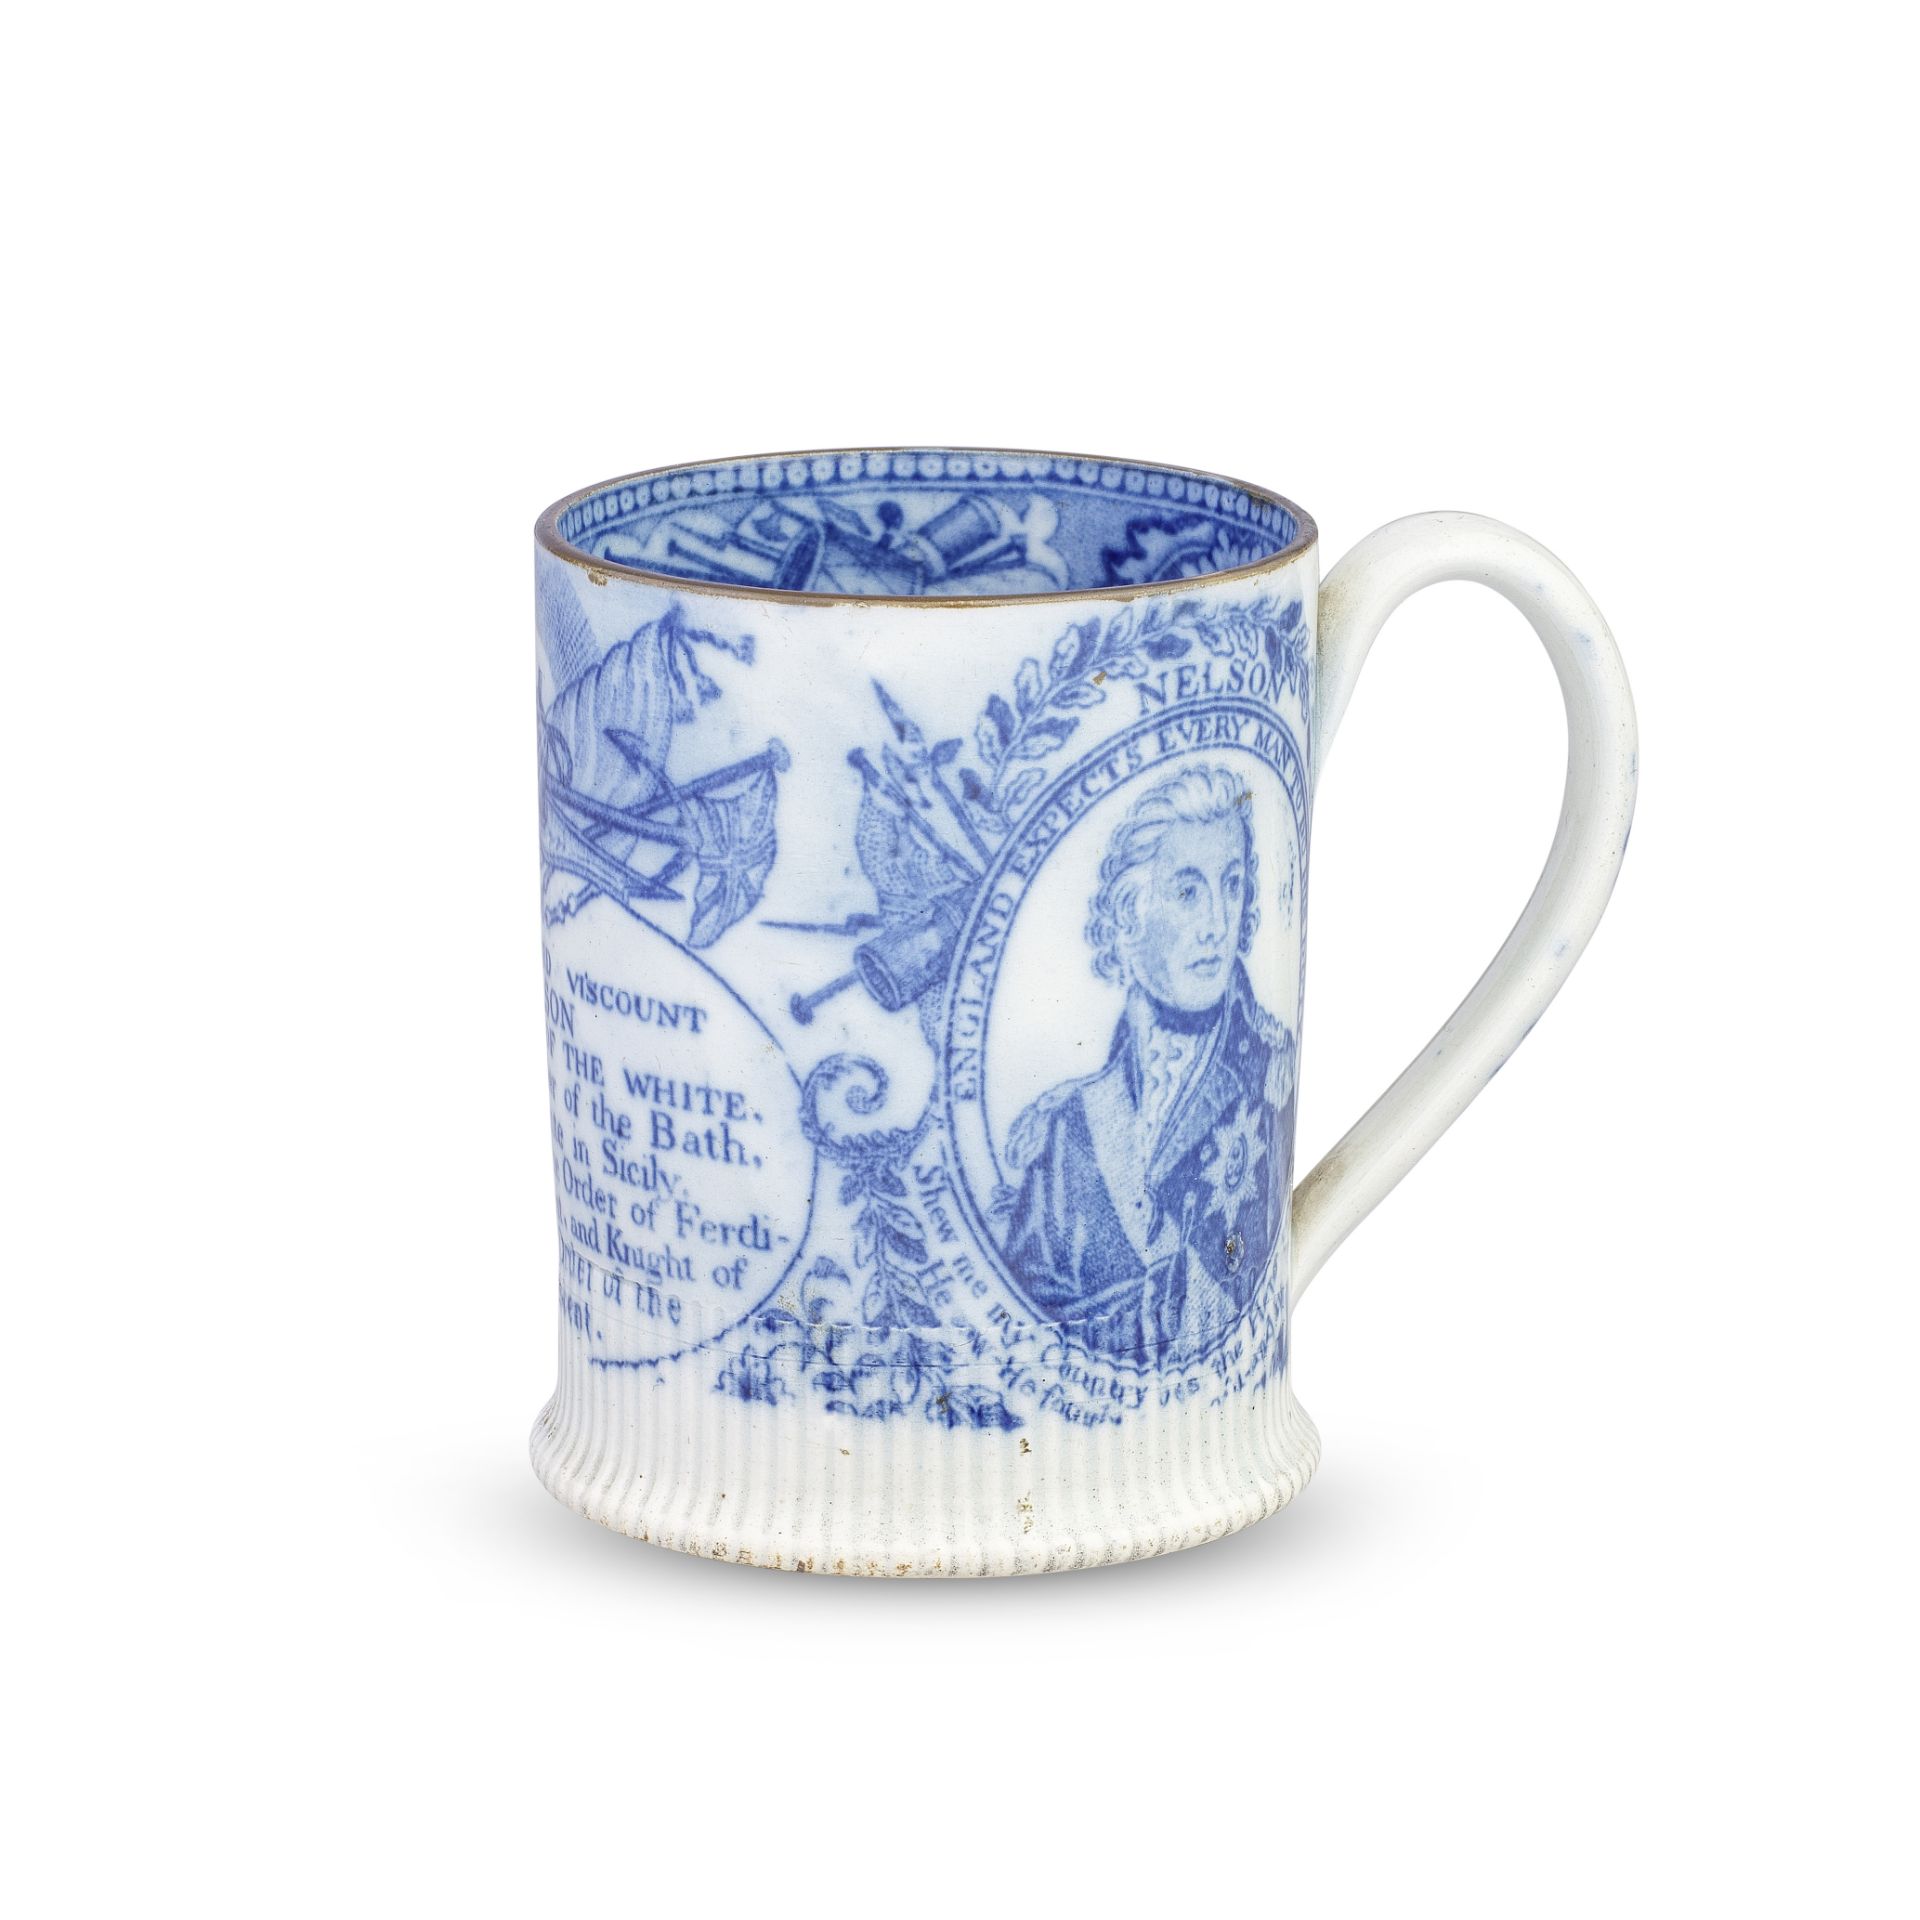 A small pearlware mug, circa 1805-10